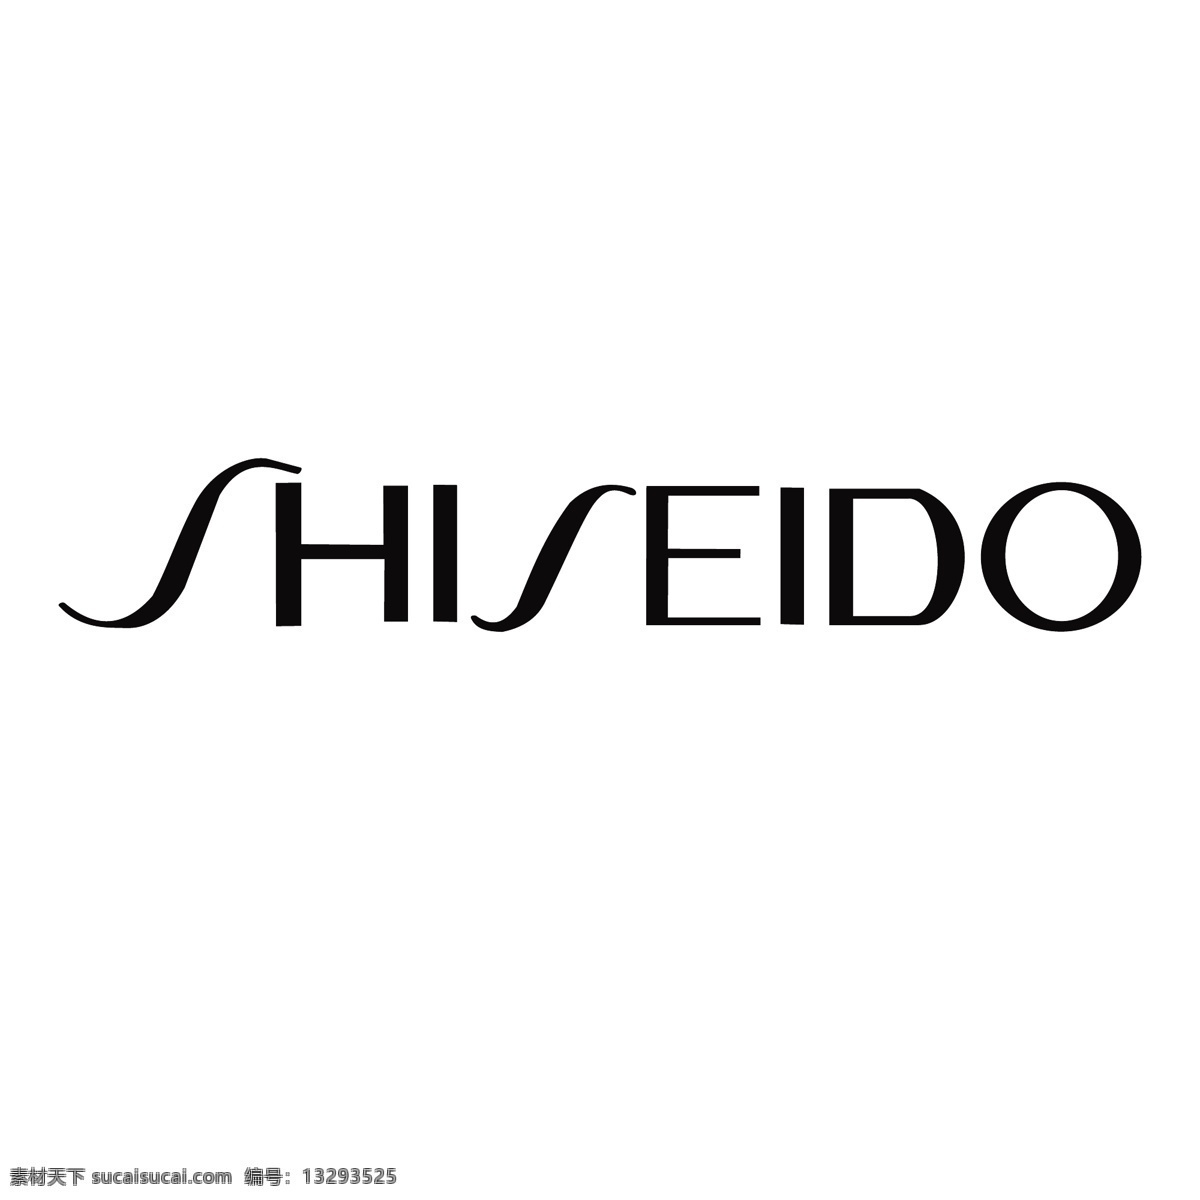 资生堂 logo shiseido shiseidologo 美妆logo 标志图标 公共标识标志